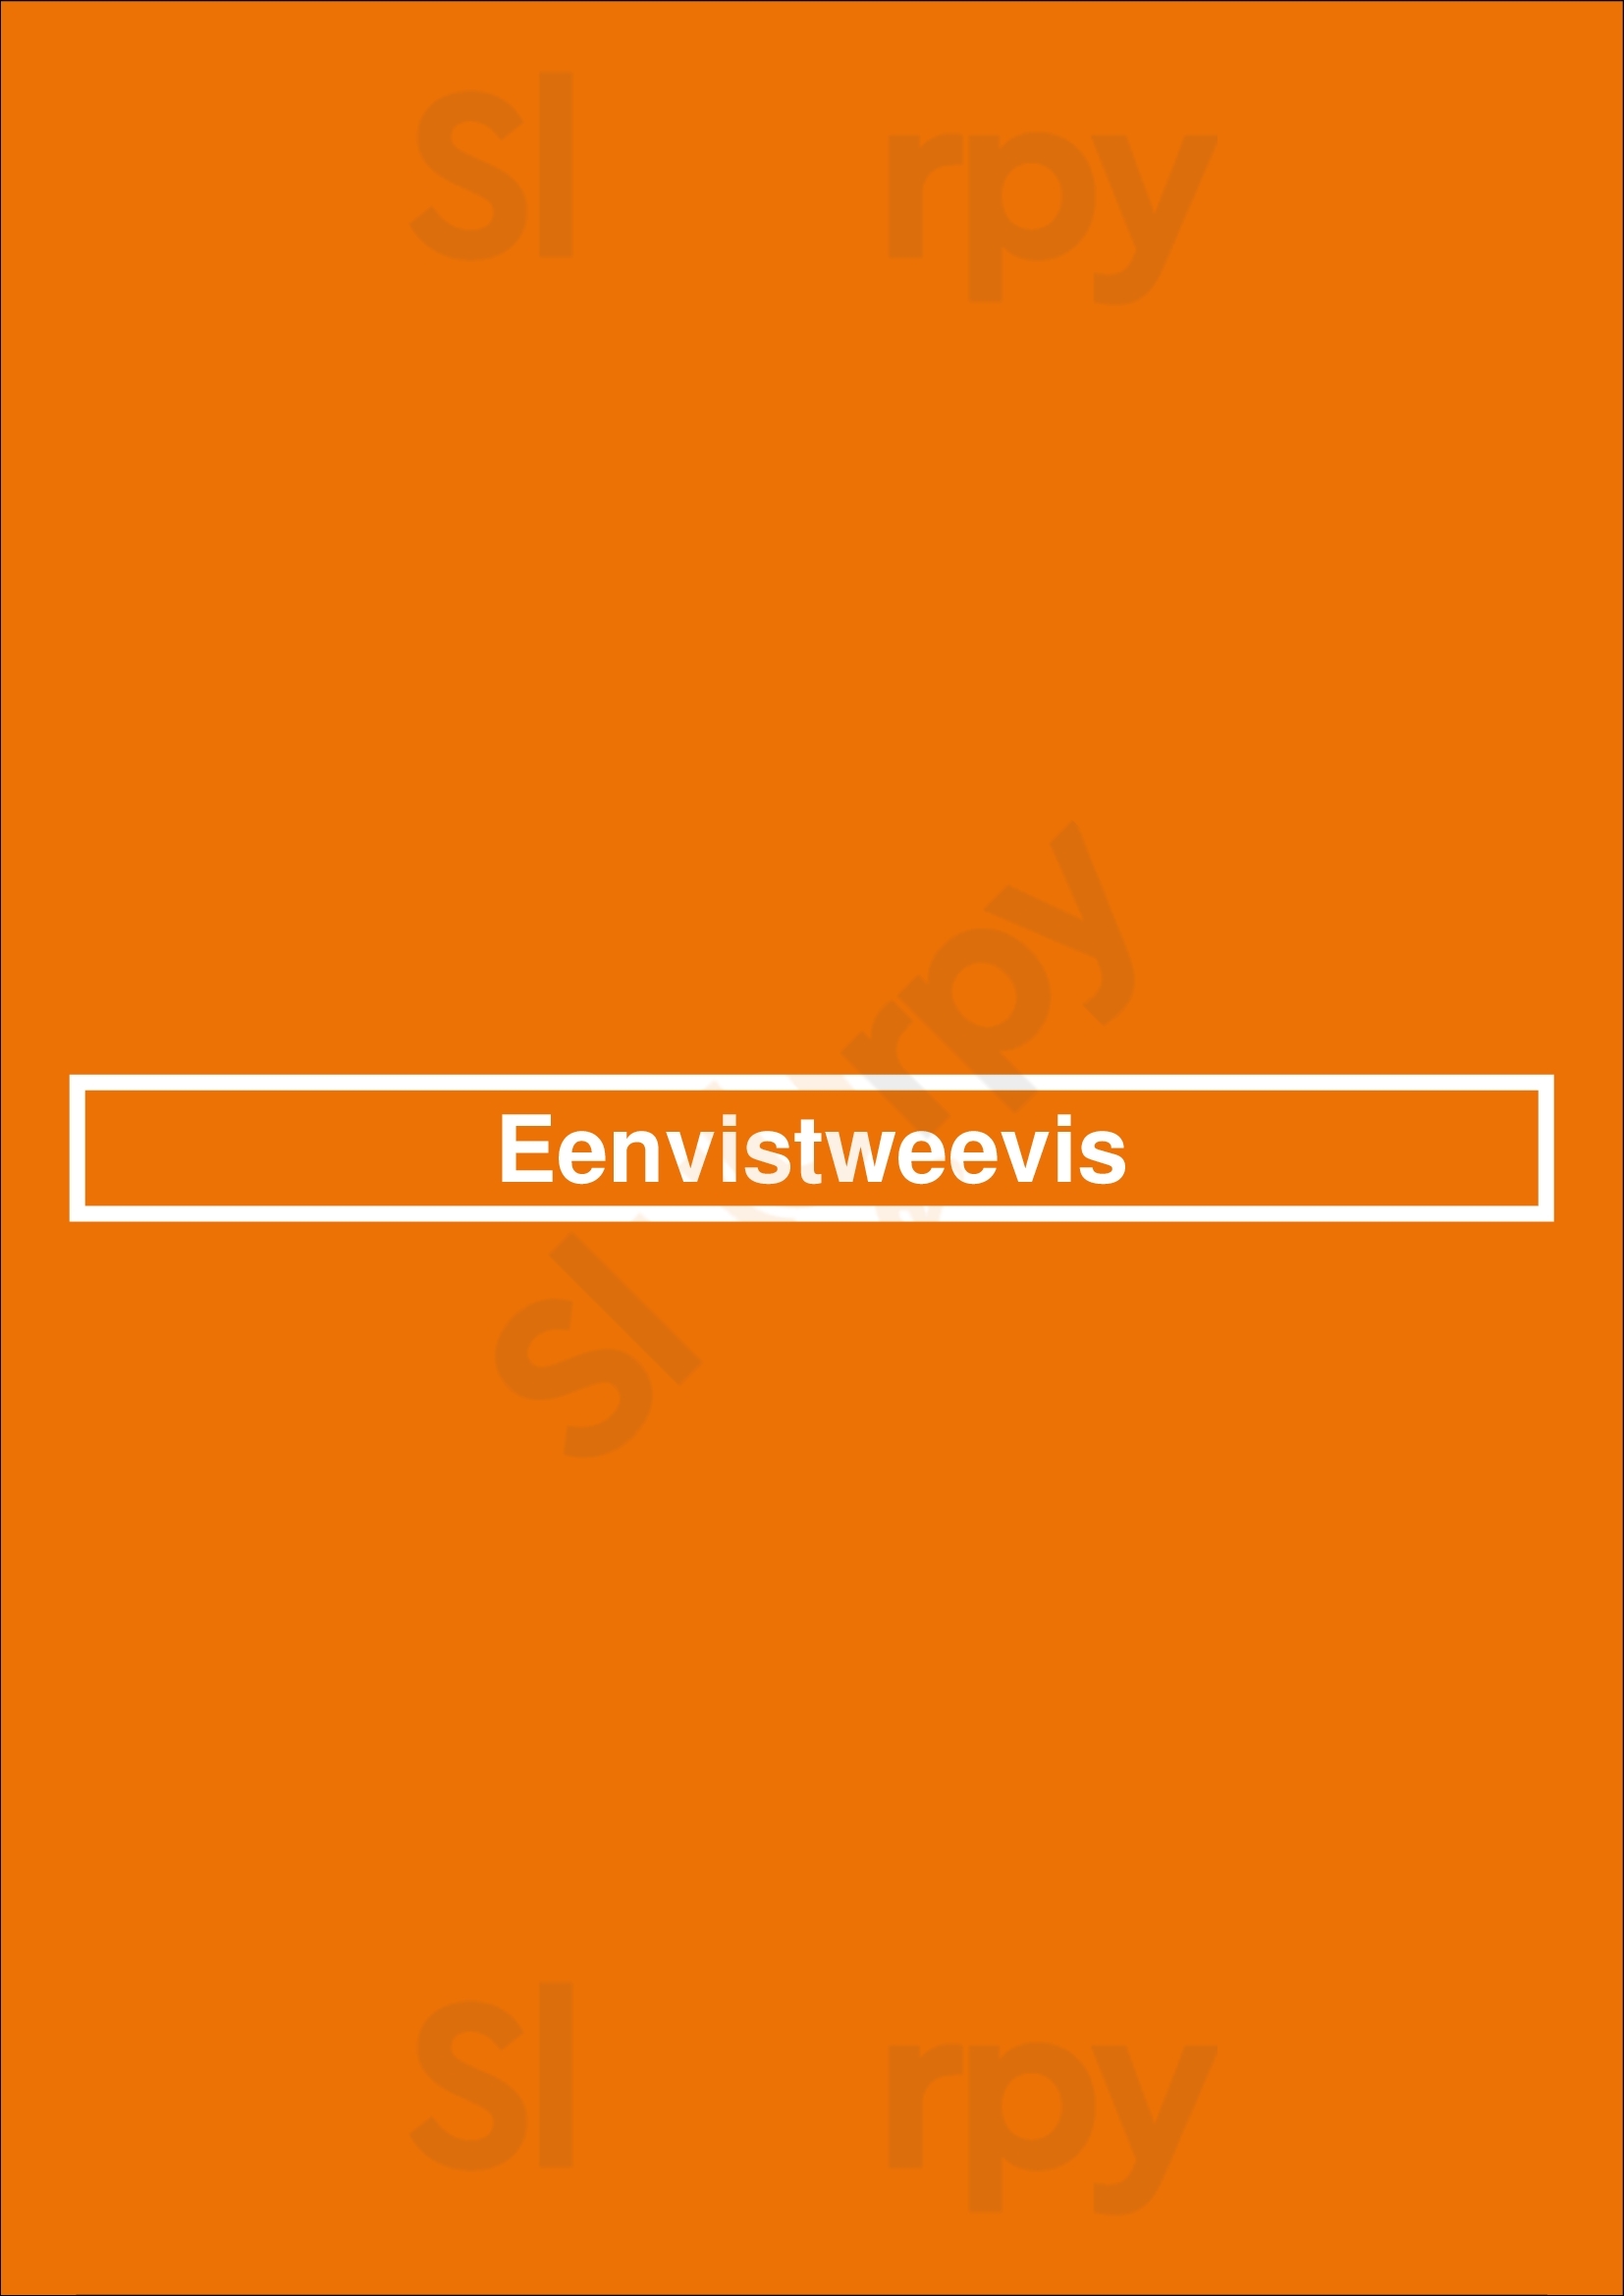 Eenvistweevis Amsterdam Menu - 1